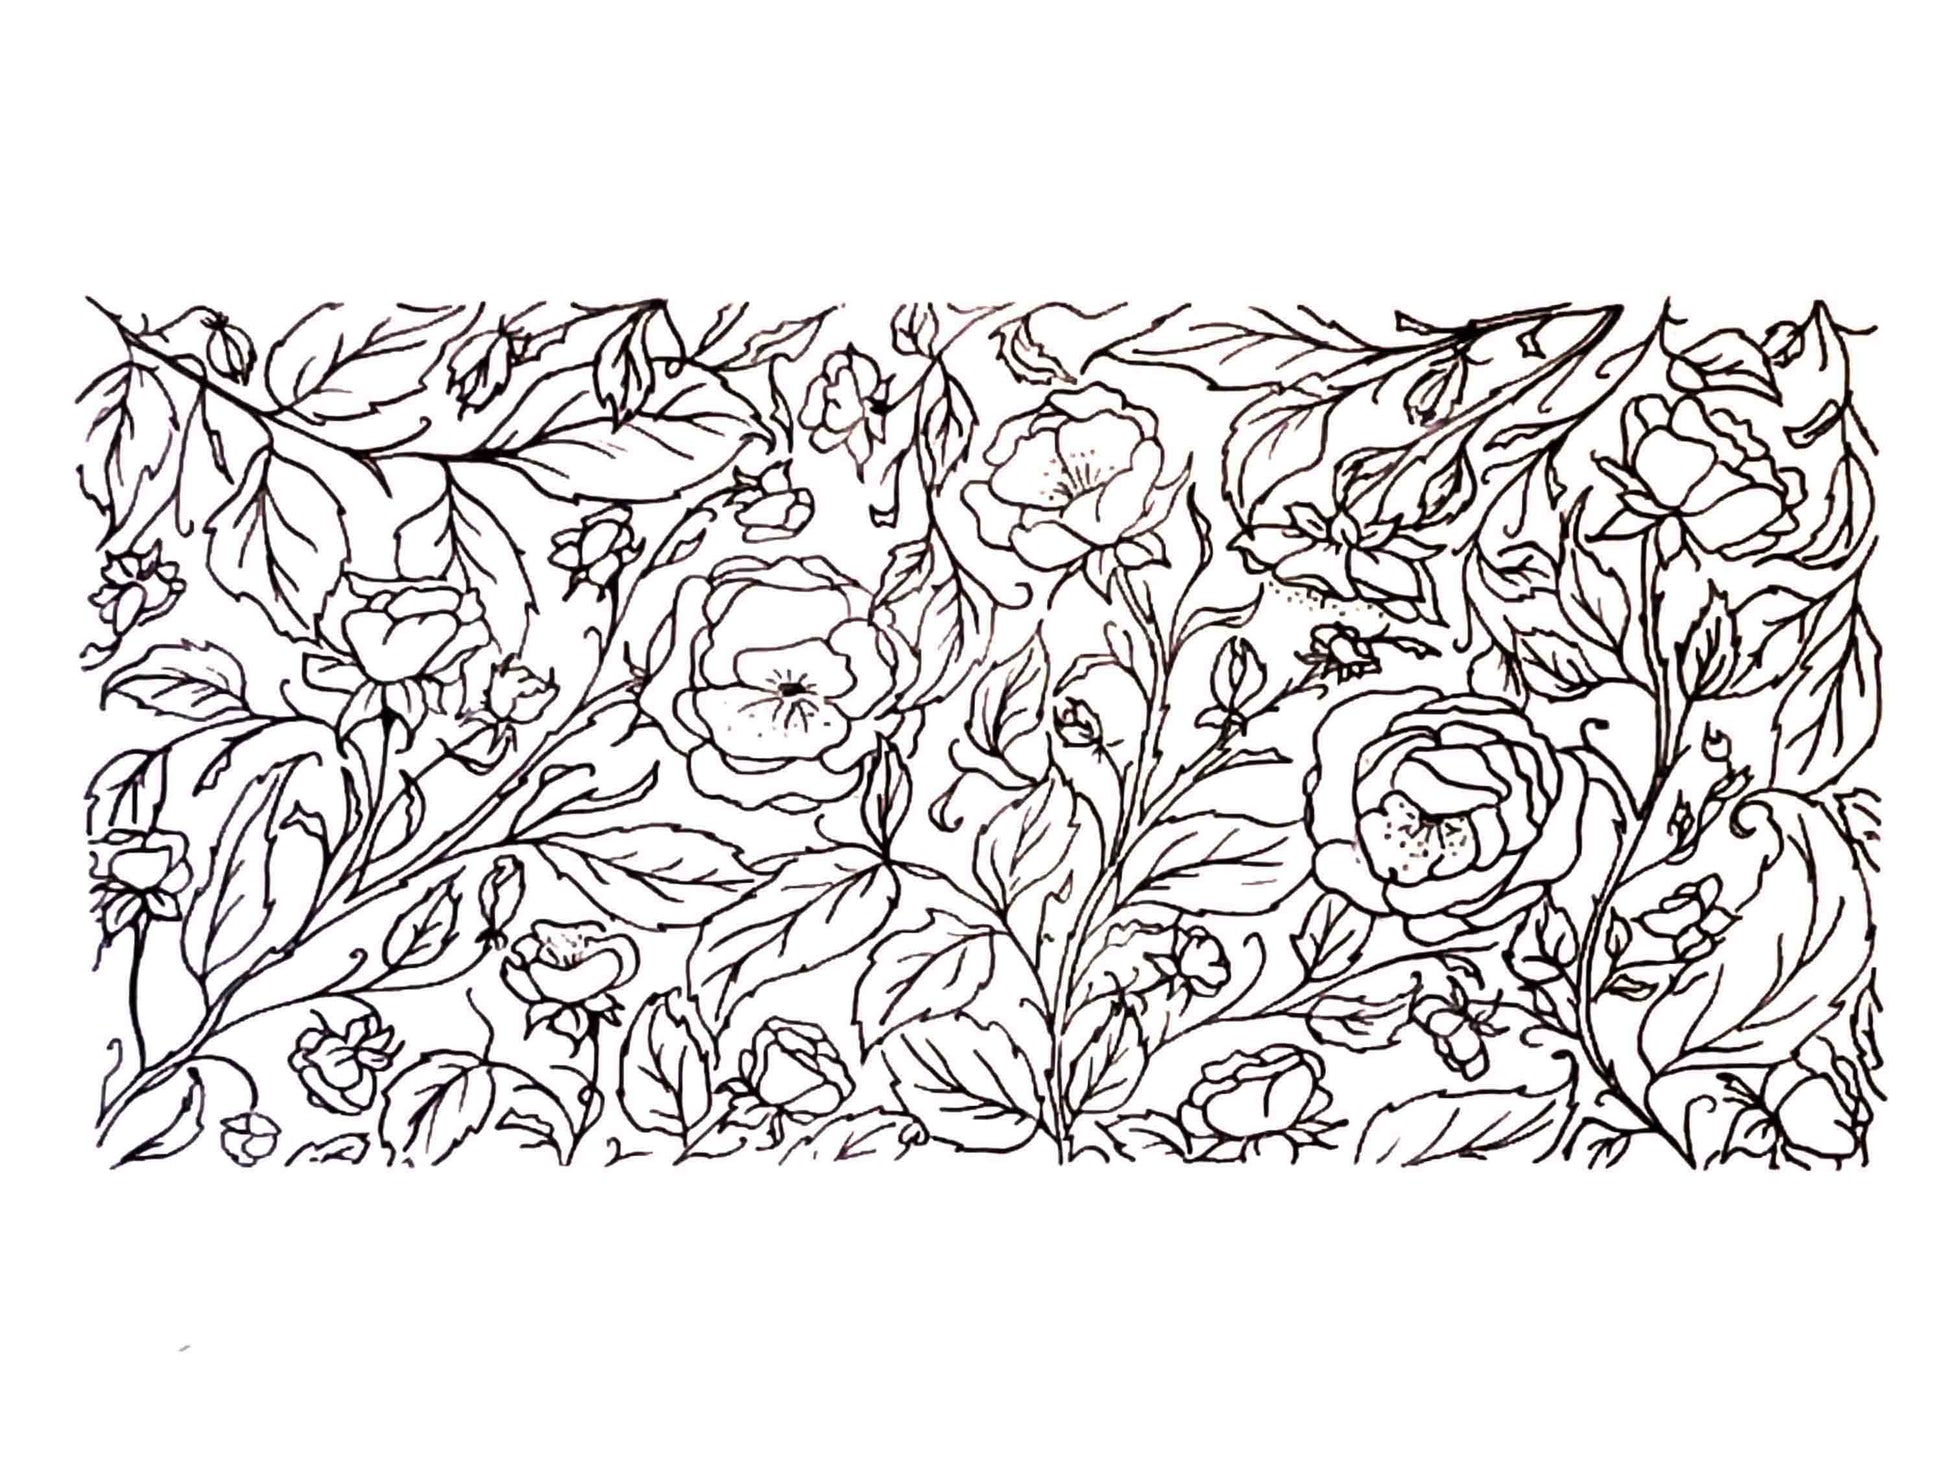 Carnet de notes Ligné A5: Style Roses Mauves Fleuri - Cahier de notes 120  pages Lignées - (15,24 x 22,86 cm / 6x9 pouces) - Notebook Flowers A5